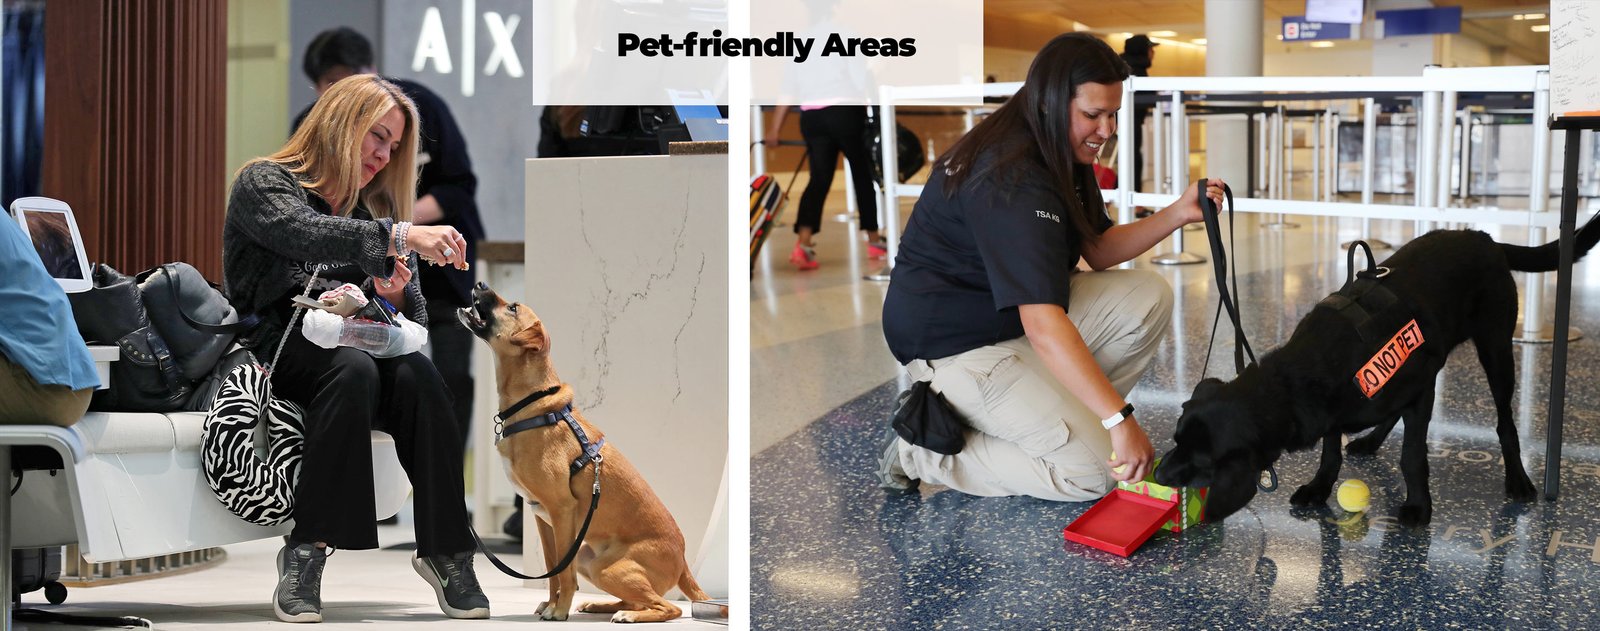 Services DFW airport pet friendly